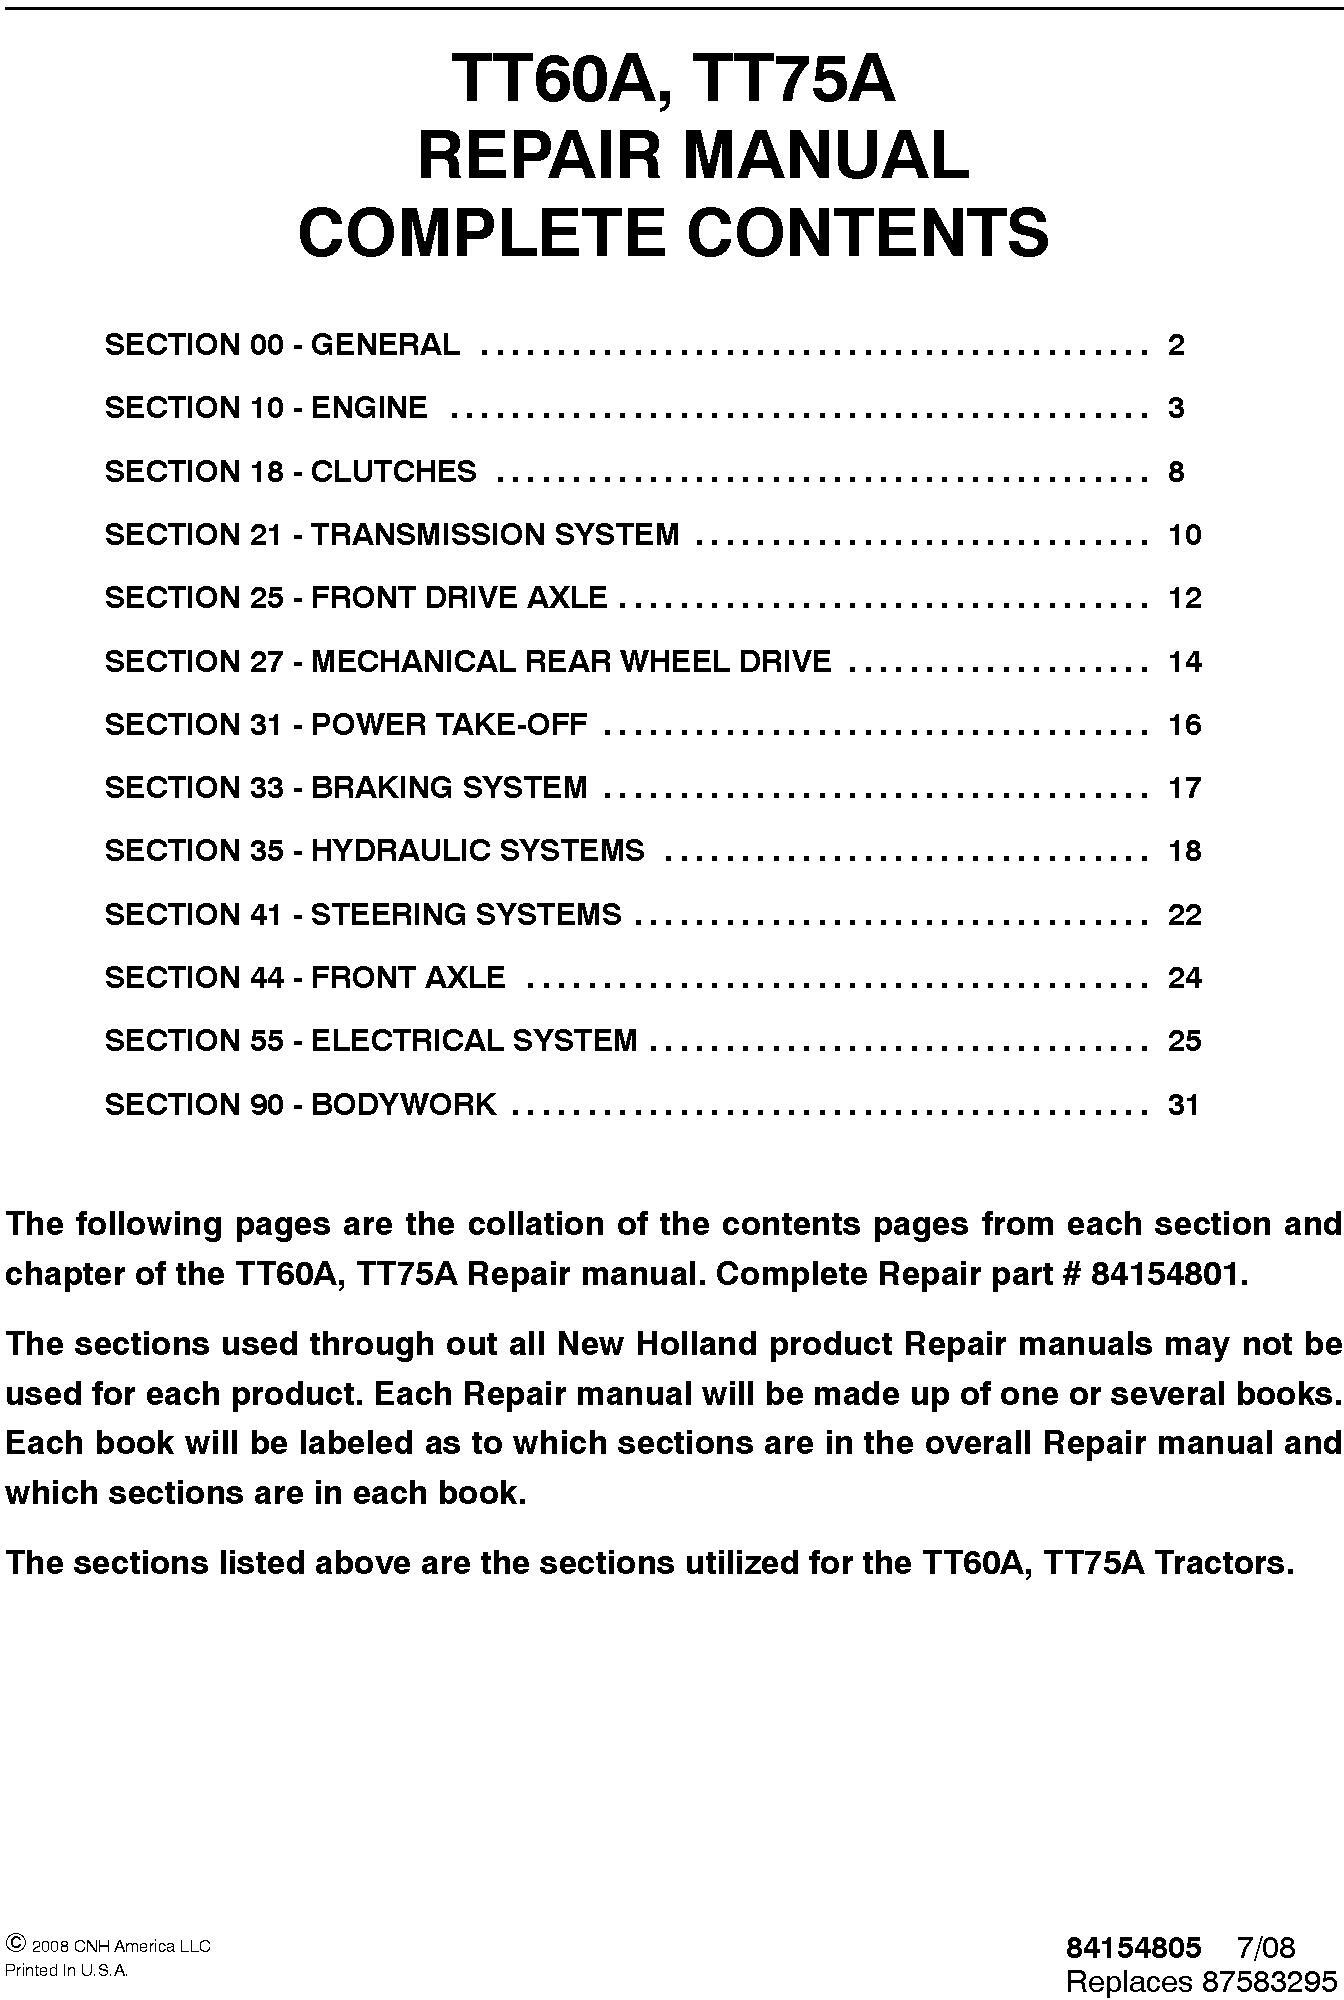 New Holland TT60A, TT75A Tractors Service Manual - 19550